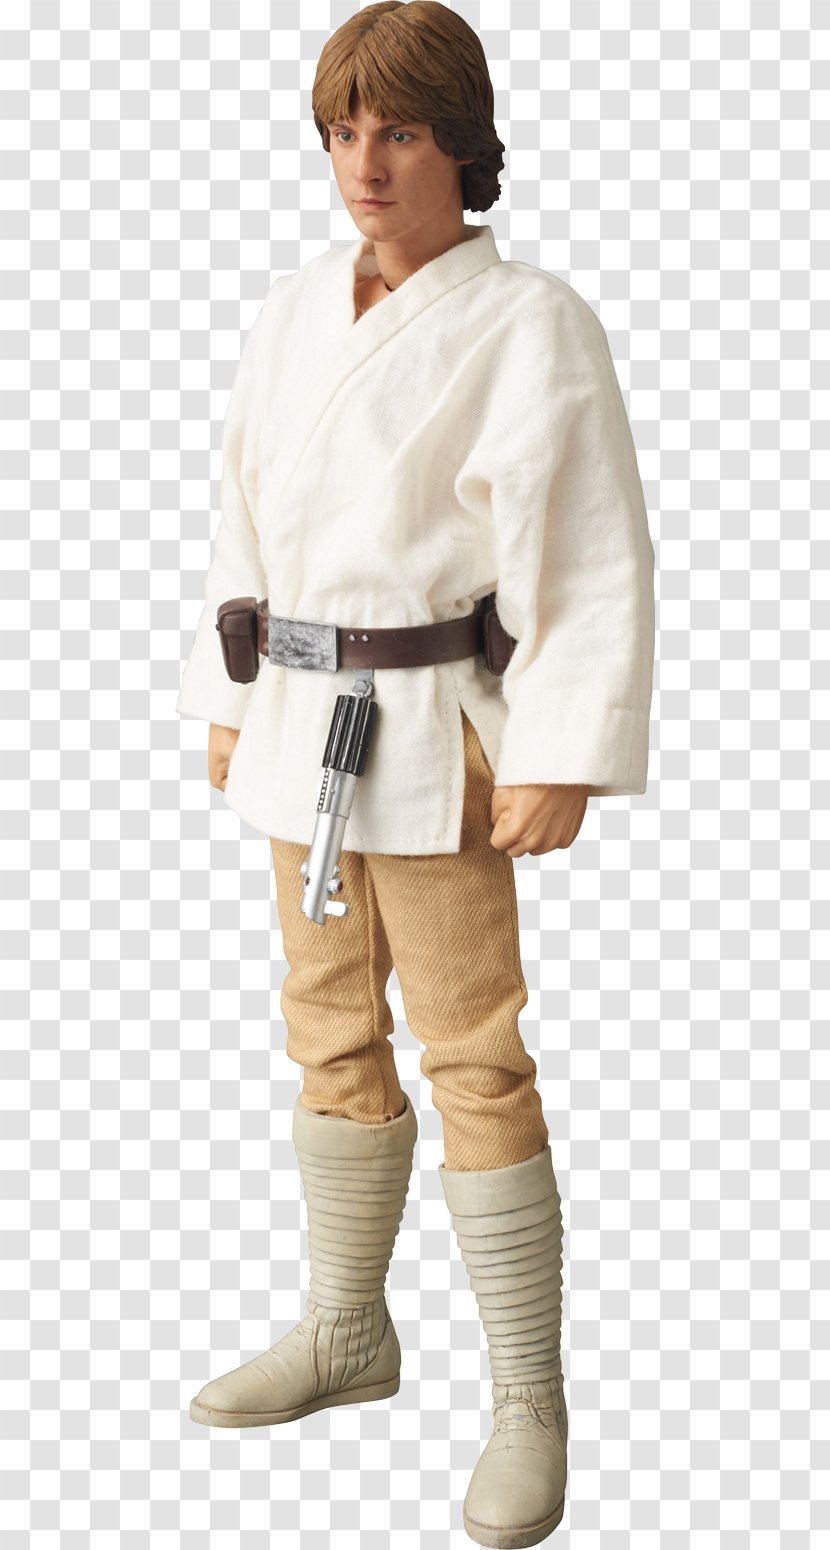 Star Wars Luke Skywalker Yoda Action & Toy Figures Medicom - Dobok Transparent PNG